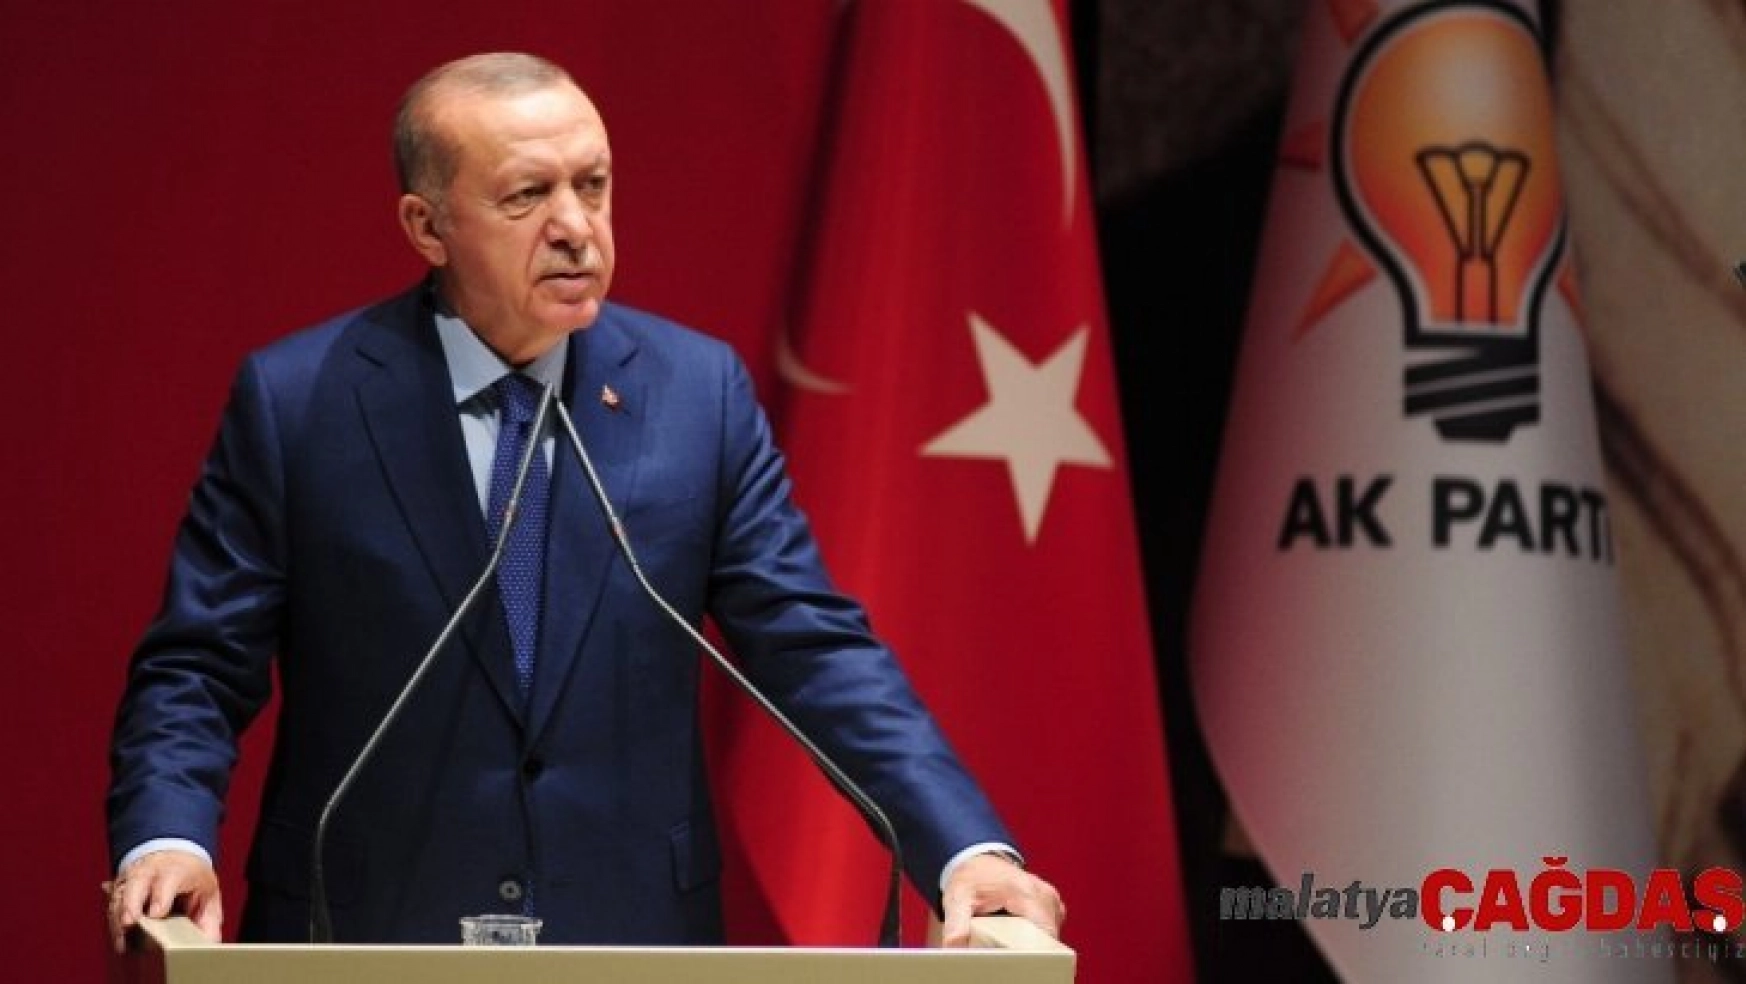 Cumhurbaşkanı Erdoğan: 'AK Parti'nin sahibi millettir'